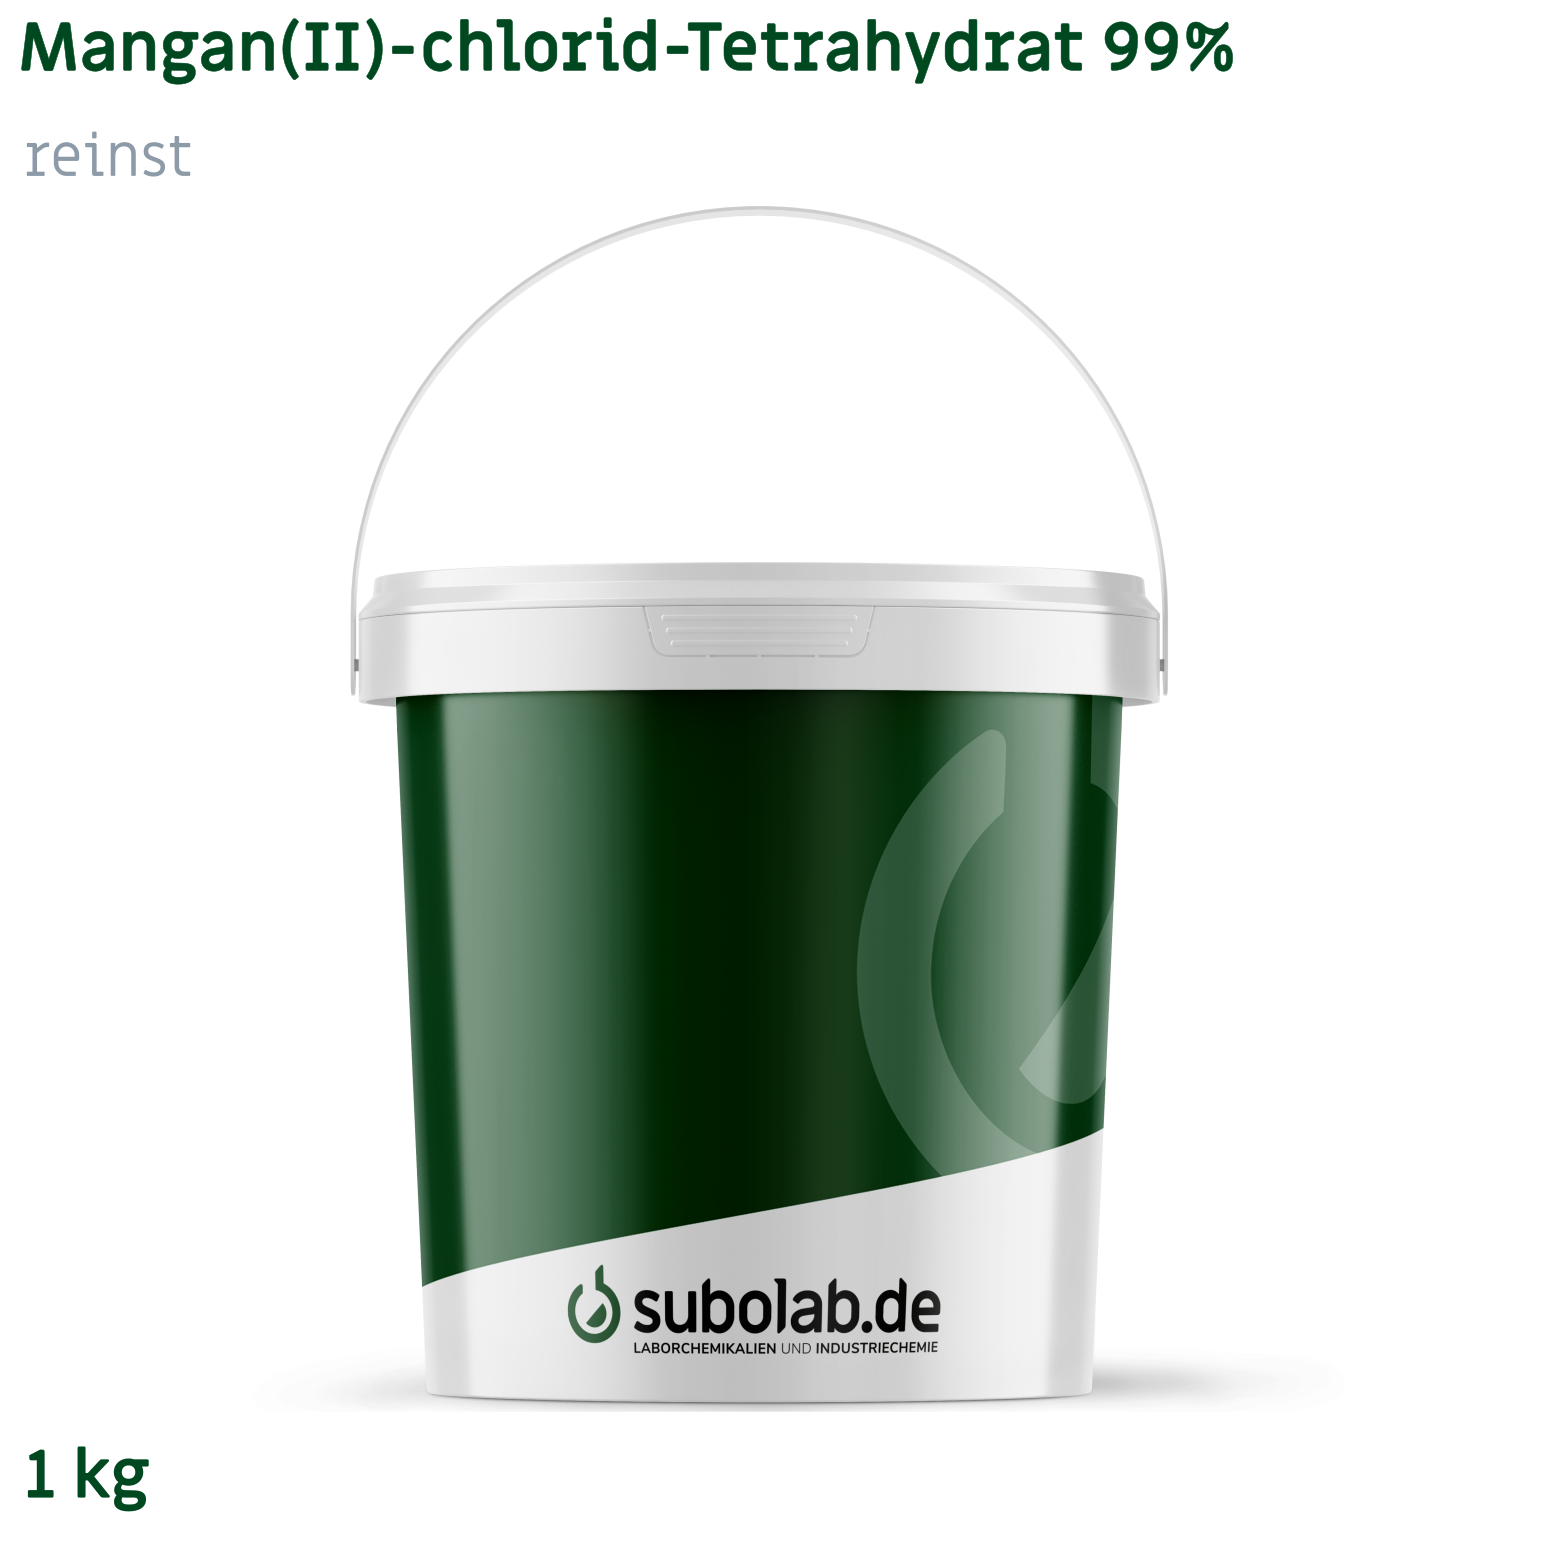 Bild von Mangan(II)-chlorid - Tetrahydrat 99% reinst (1 kg)